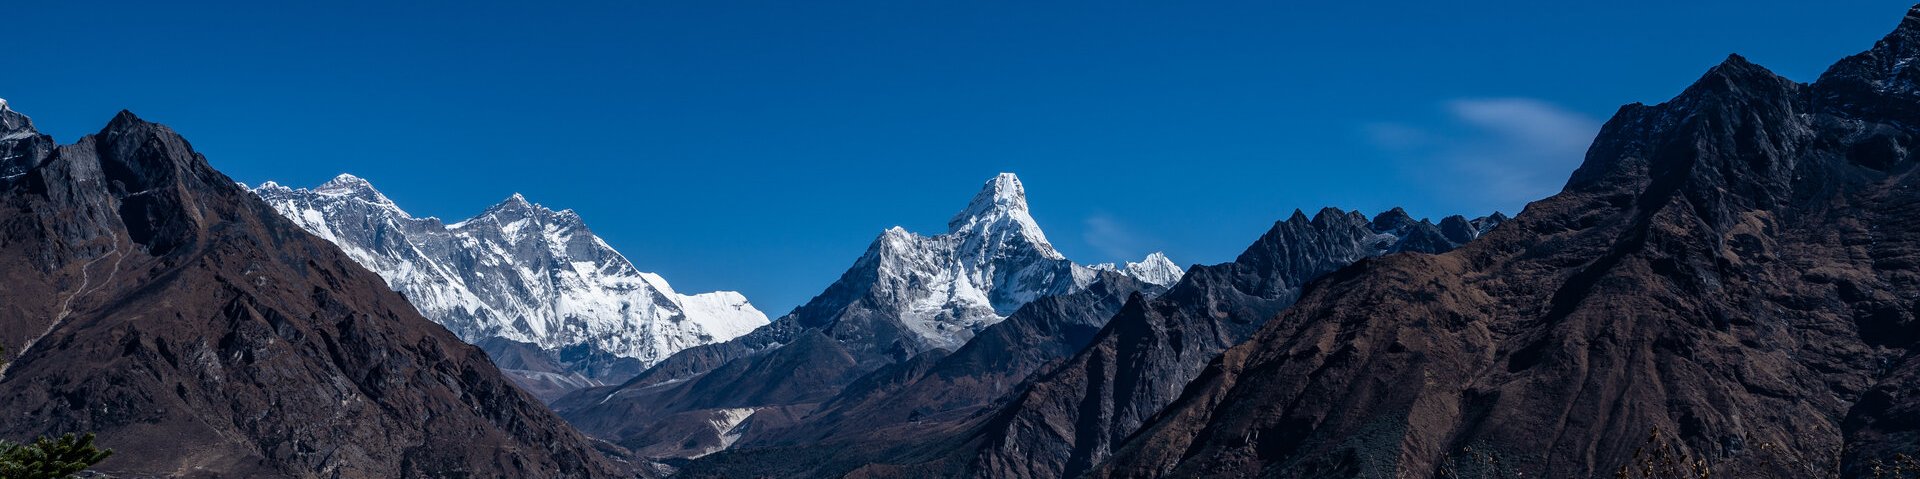 Erste Blicke auf Ama Dablam, Lhotse und Everest in Nepal